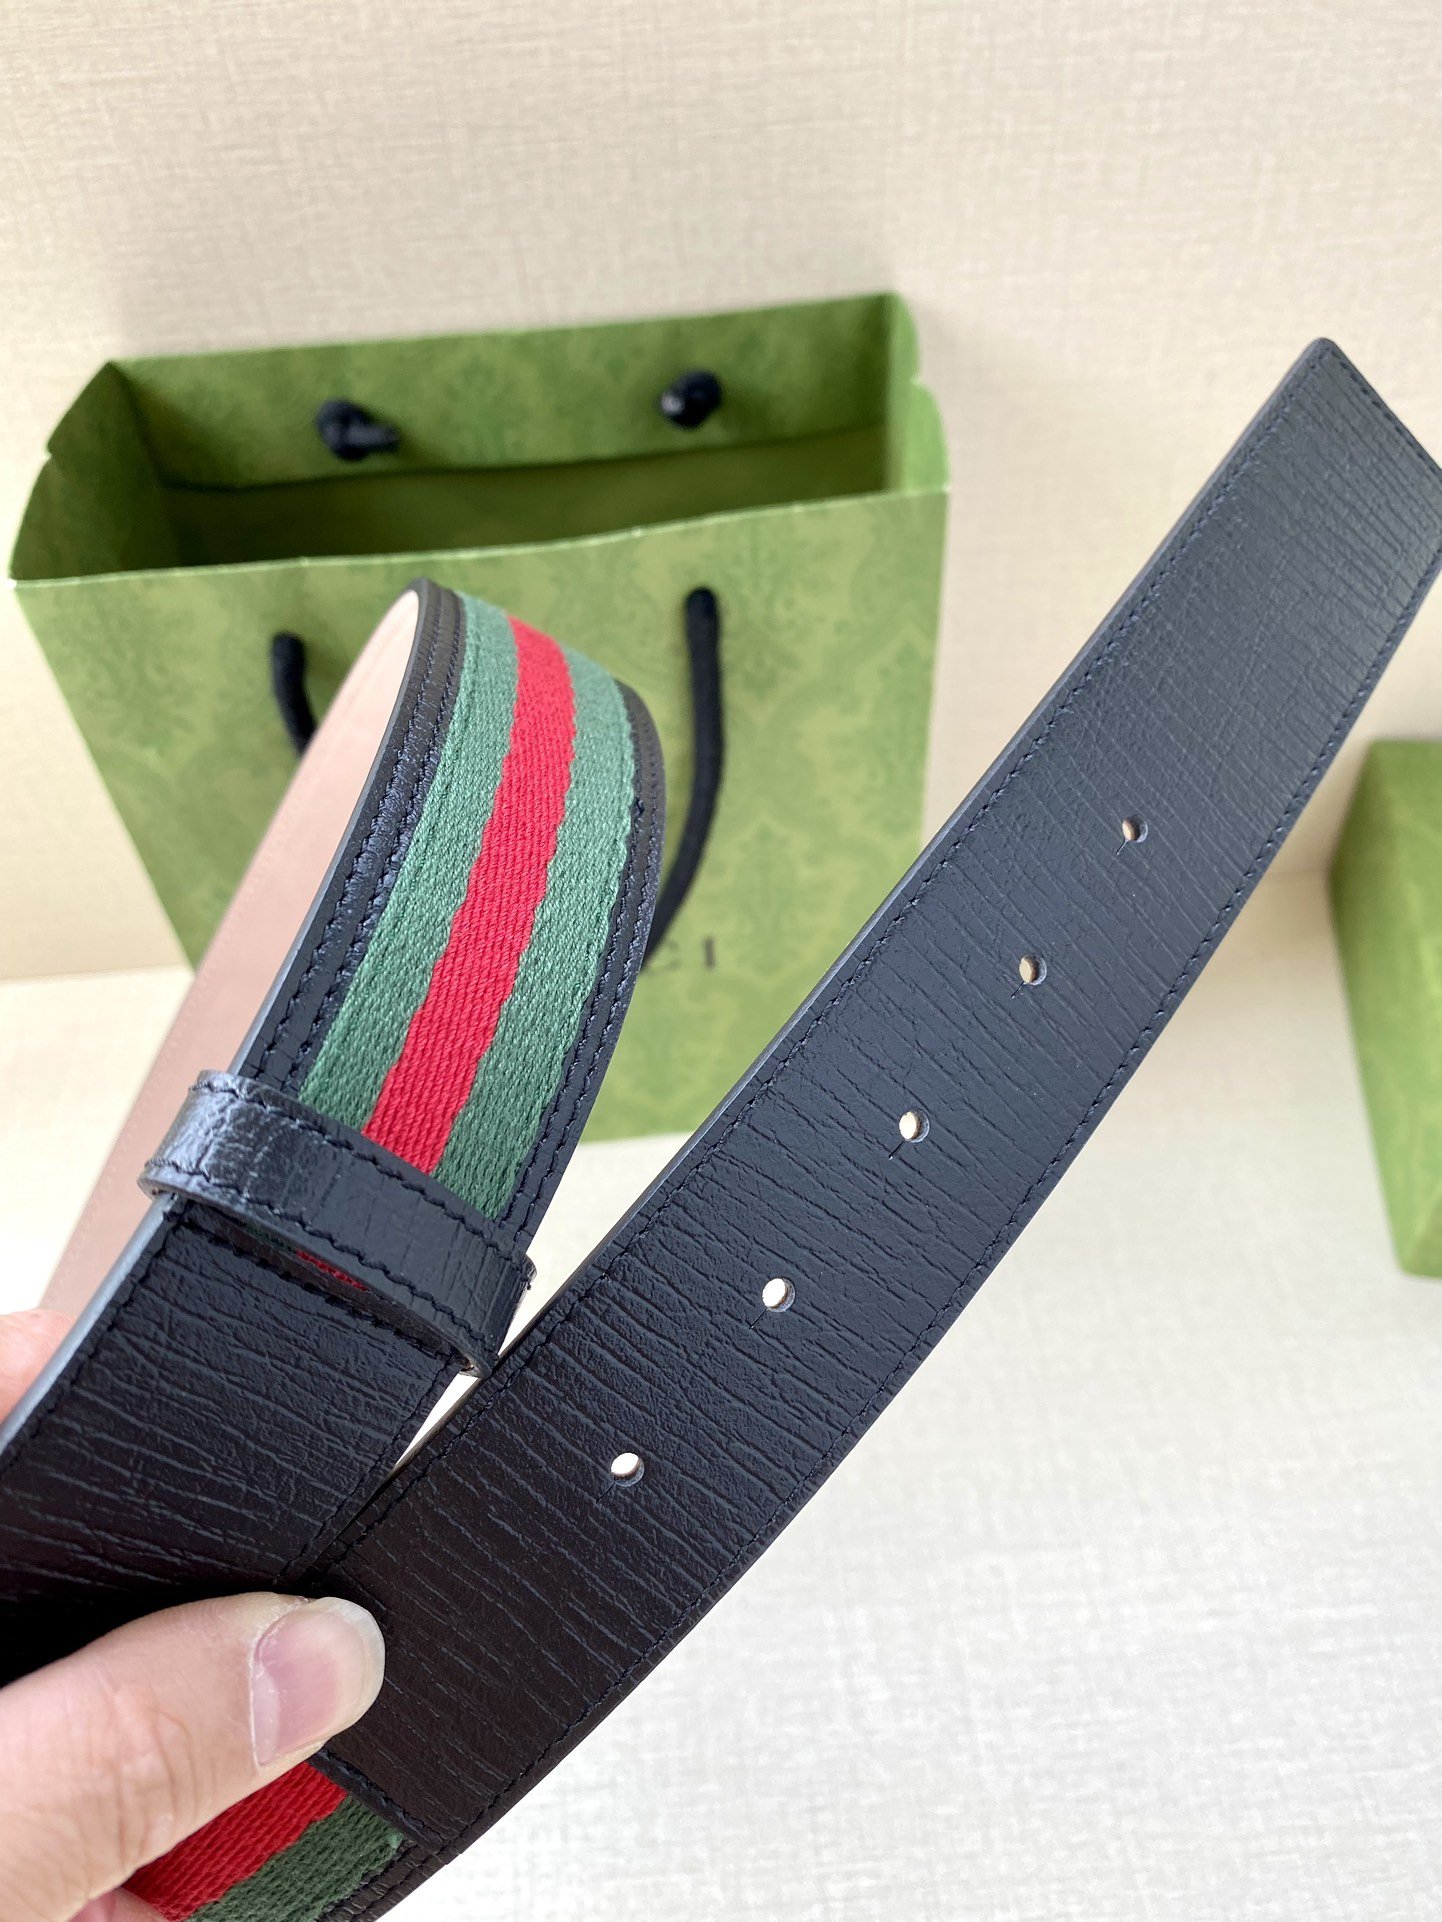 宽度4.0cmGUCCI经典帆布织带腰带配以织纹皮质滚边和双G原单扣配有绿色/红色/绿色棉质帆布编织腰带